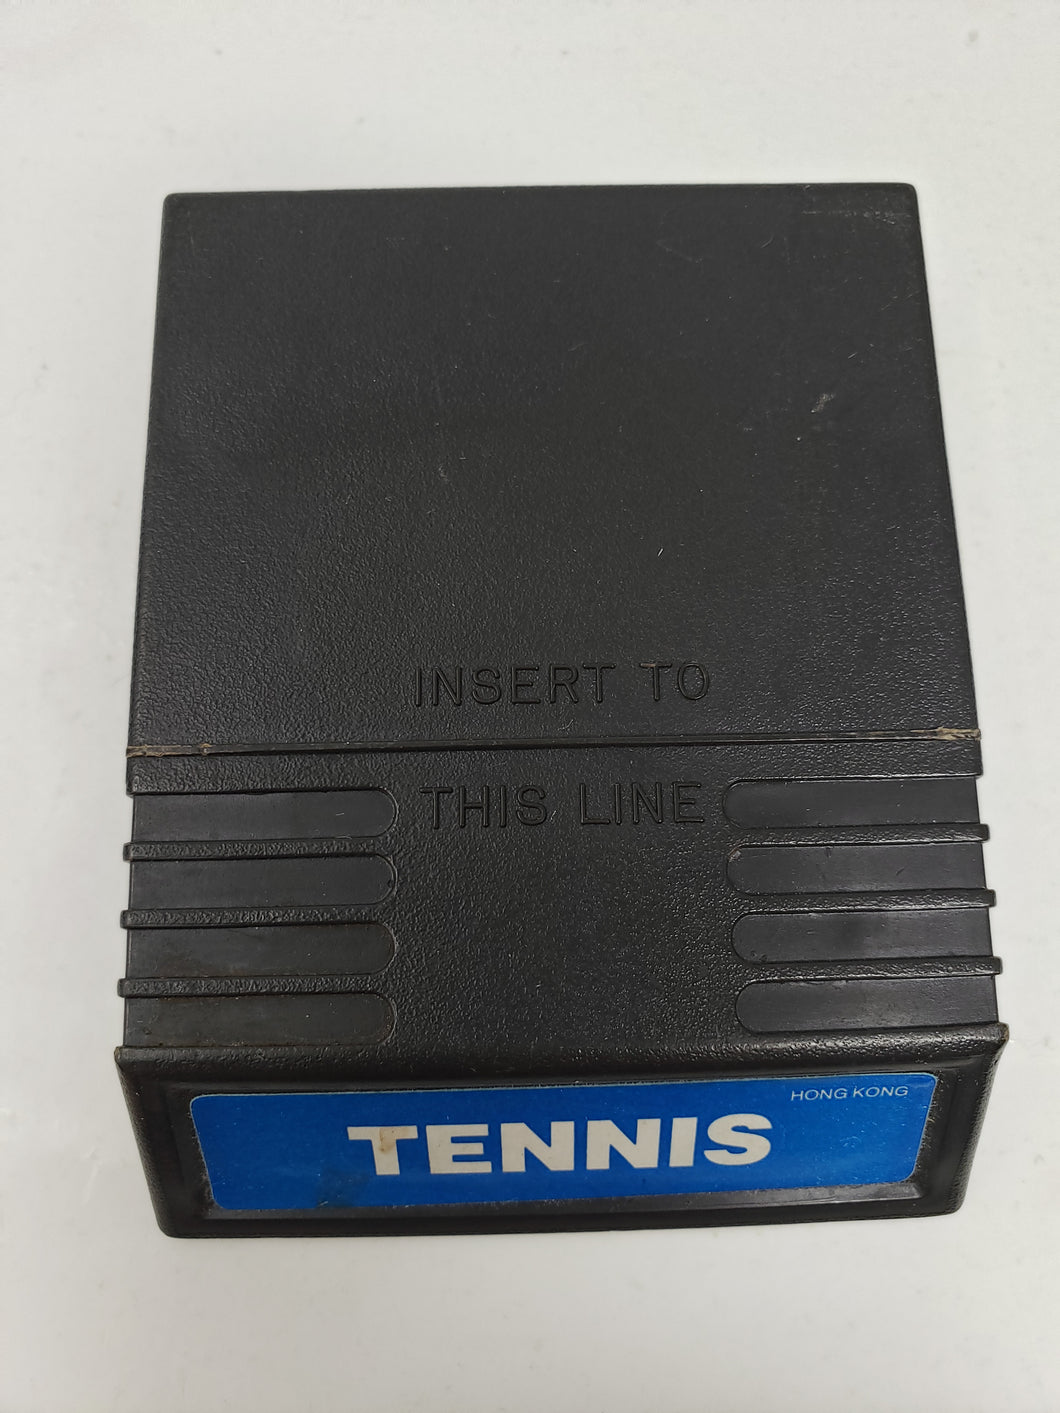 Tennis - Intellivision